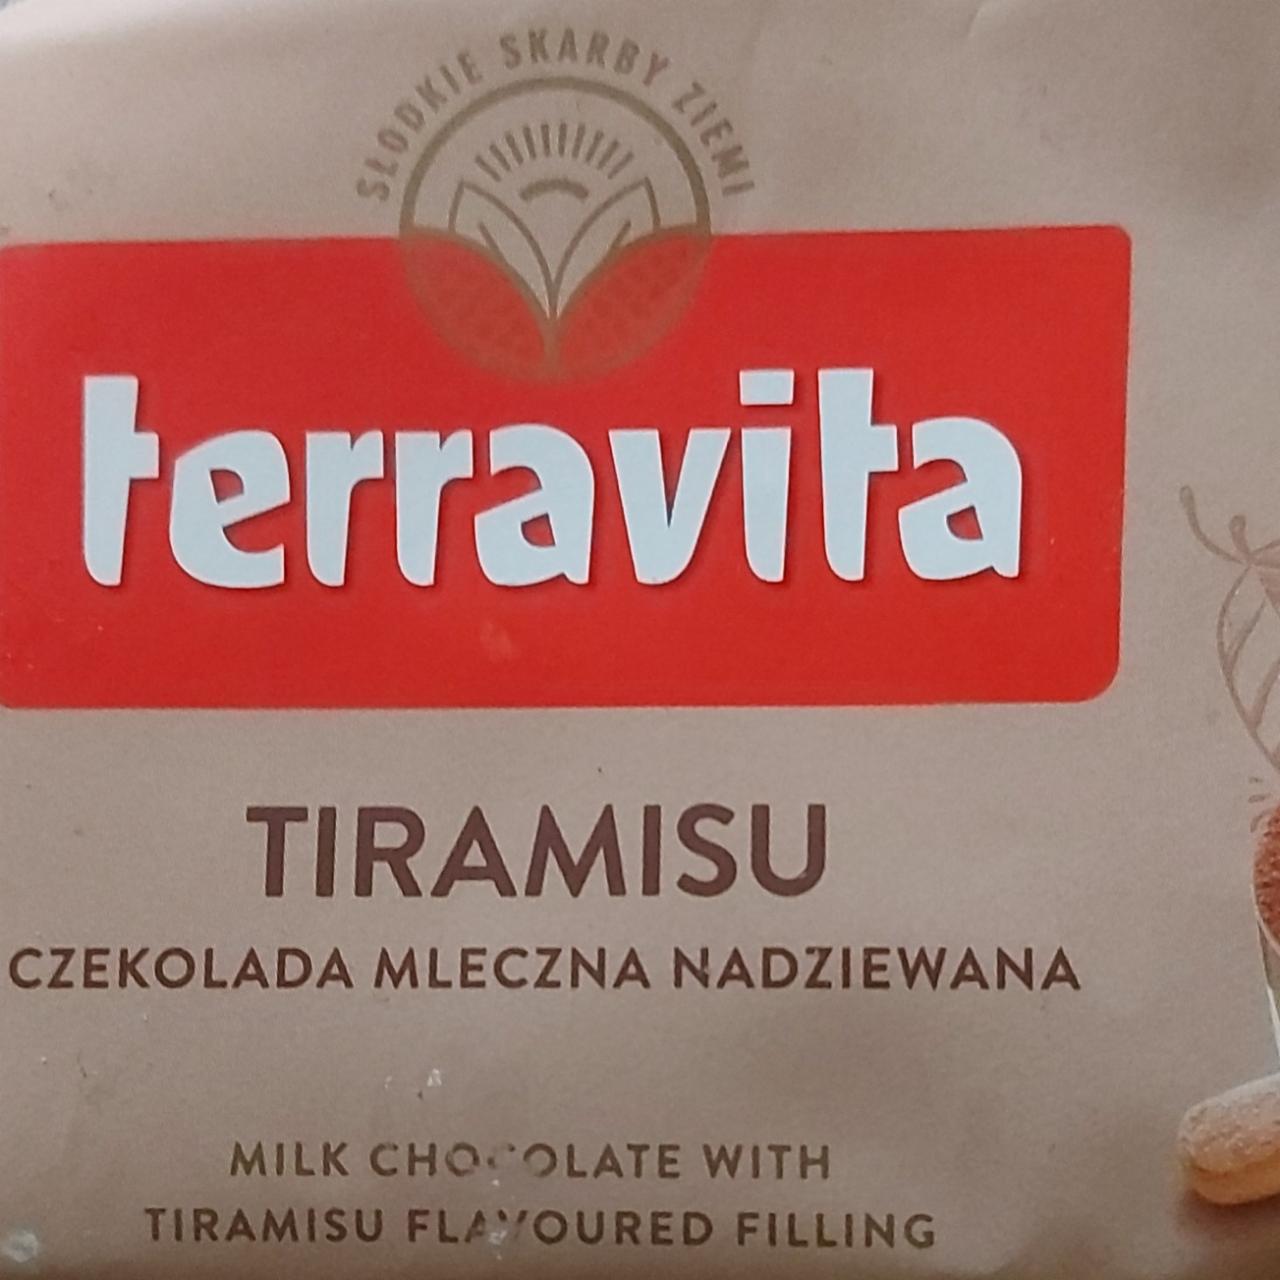 Zdjęcia - Tiramisu czekolada mleczna nadziewana Terravita